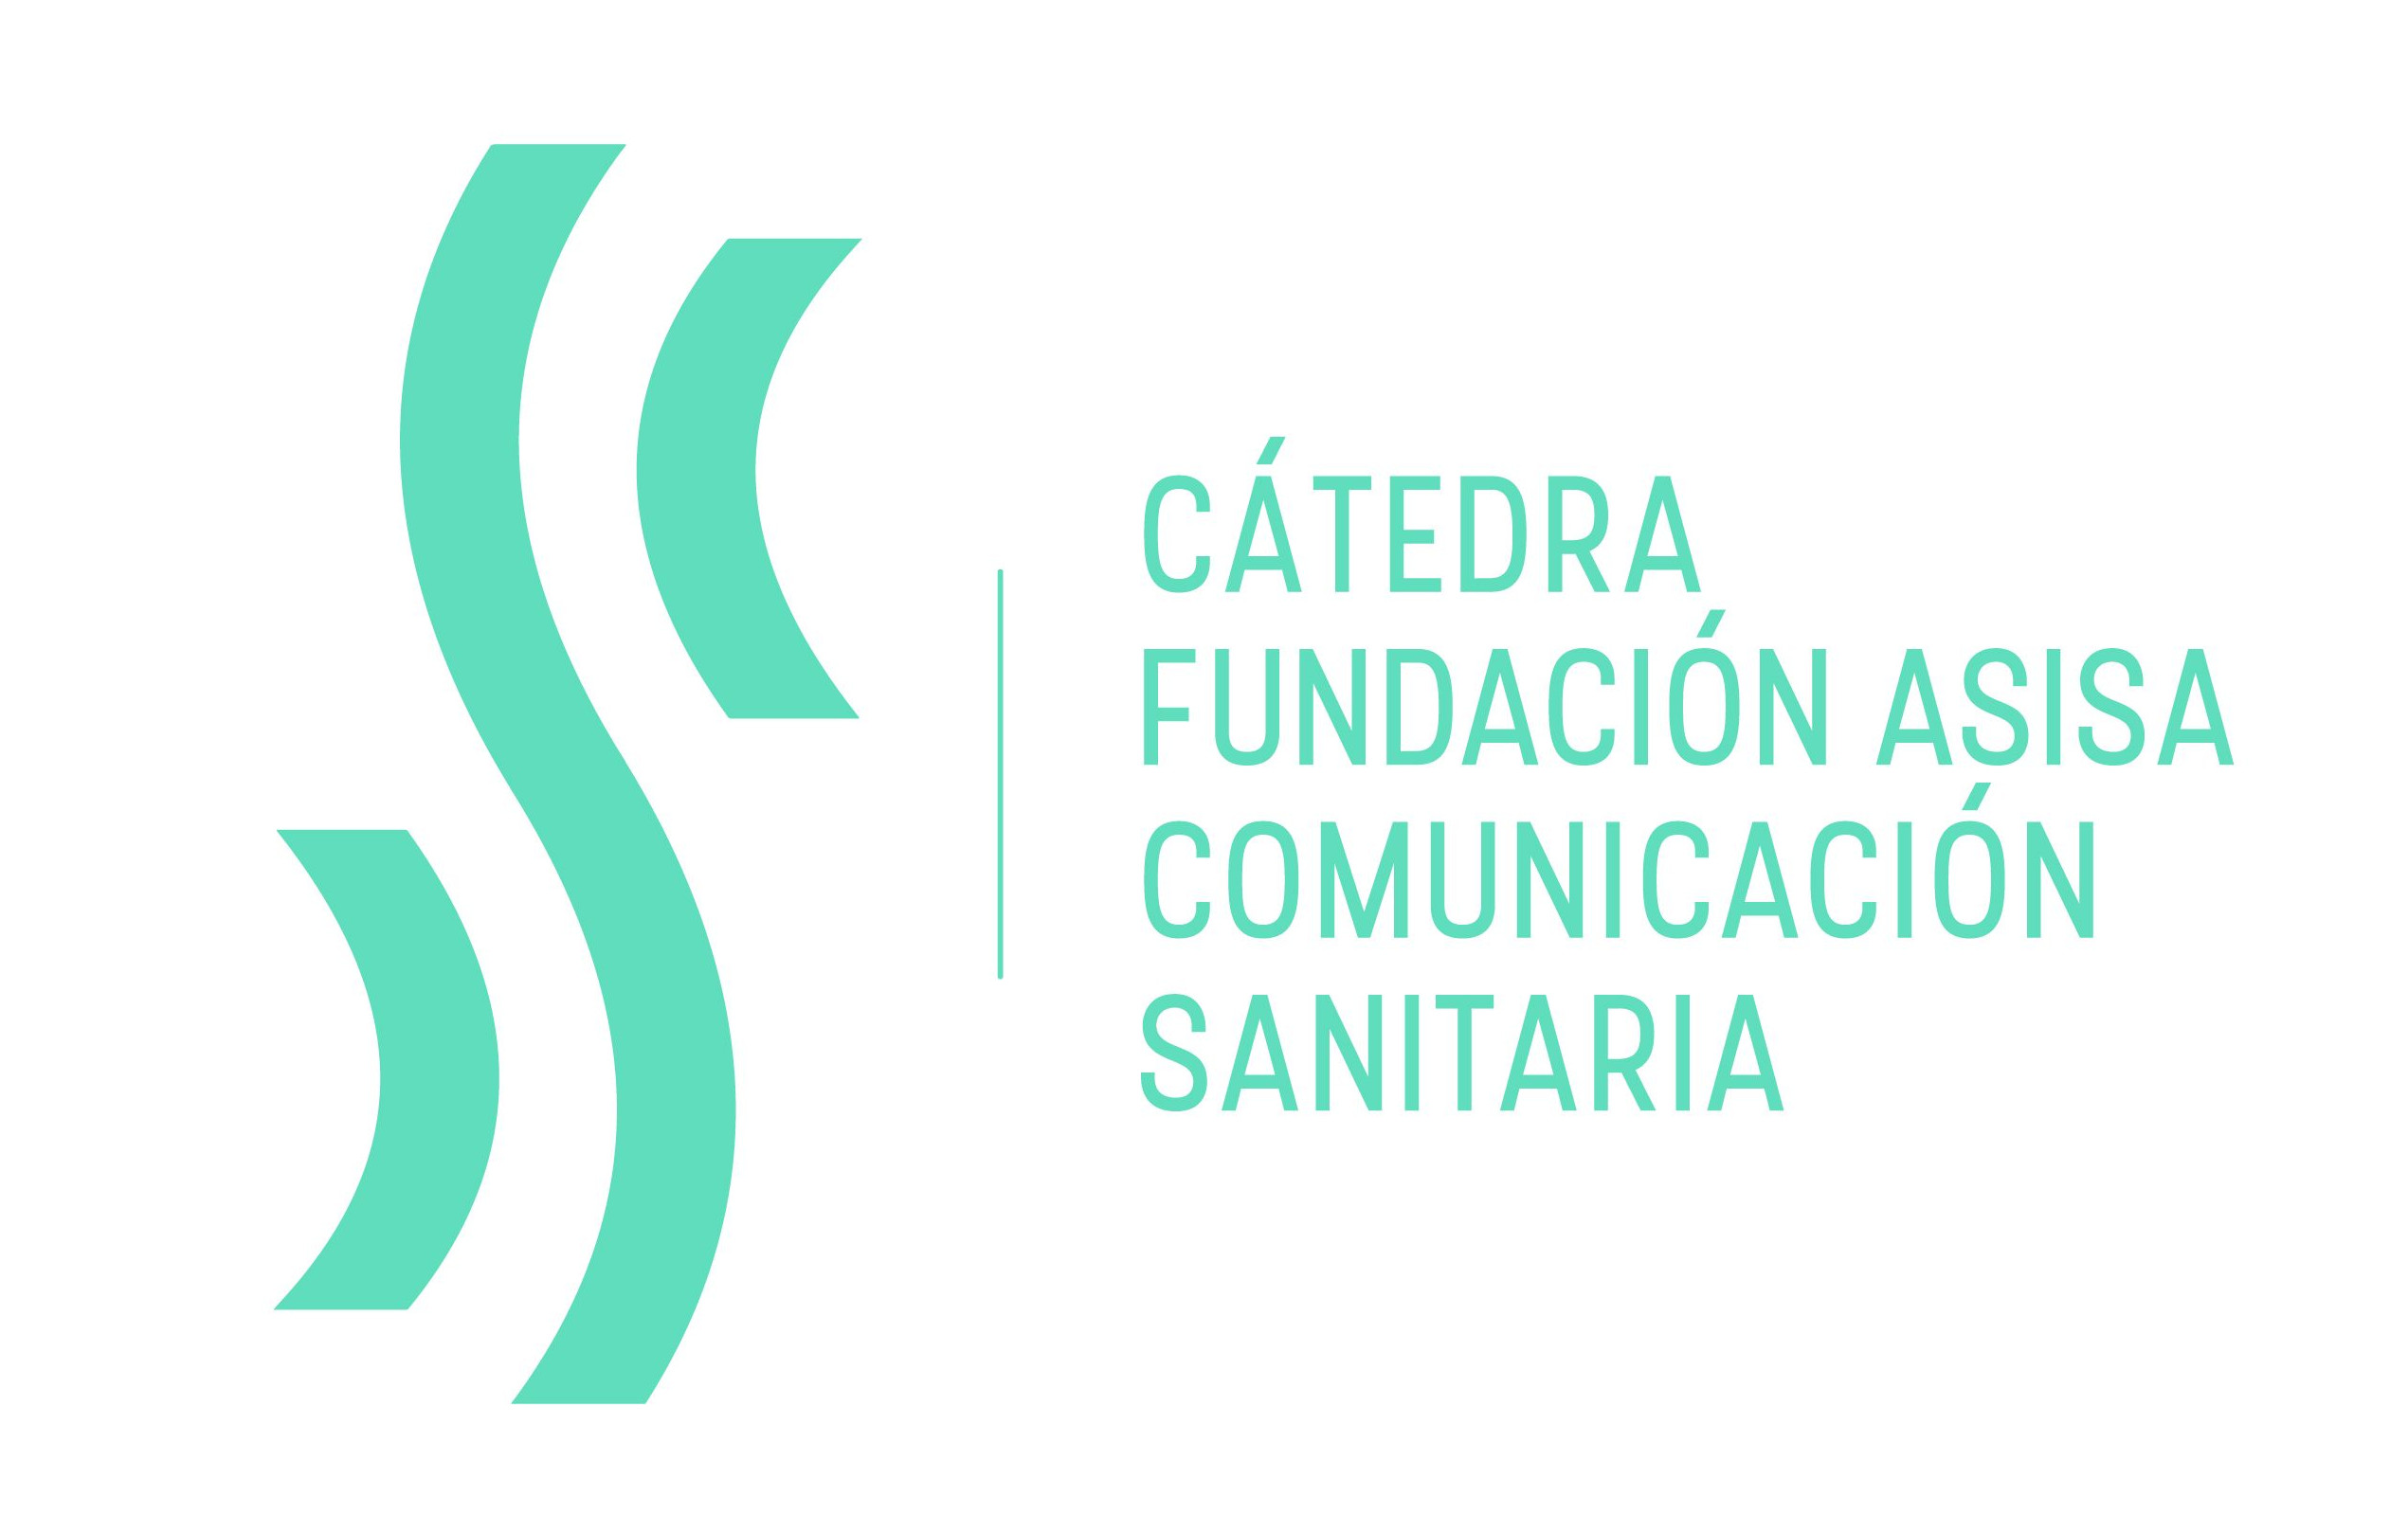 Cátedra Fundación Asisa de Comunicación Sanitaria de la Universidad de Murcia